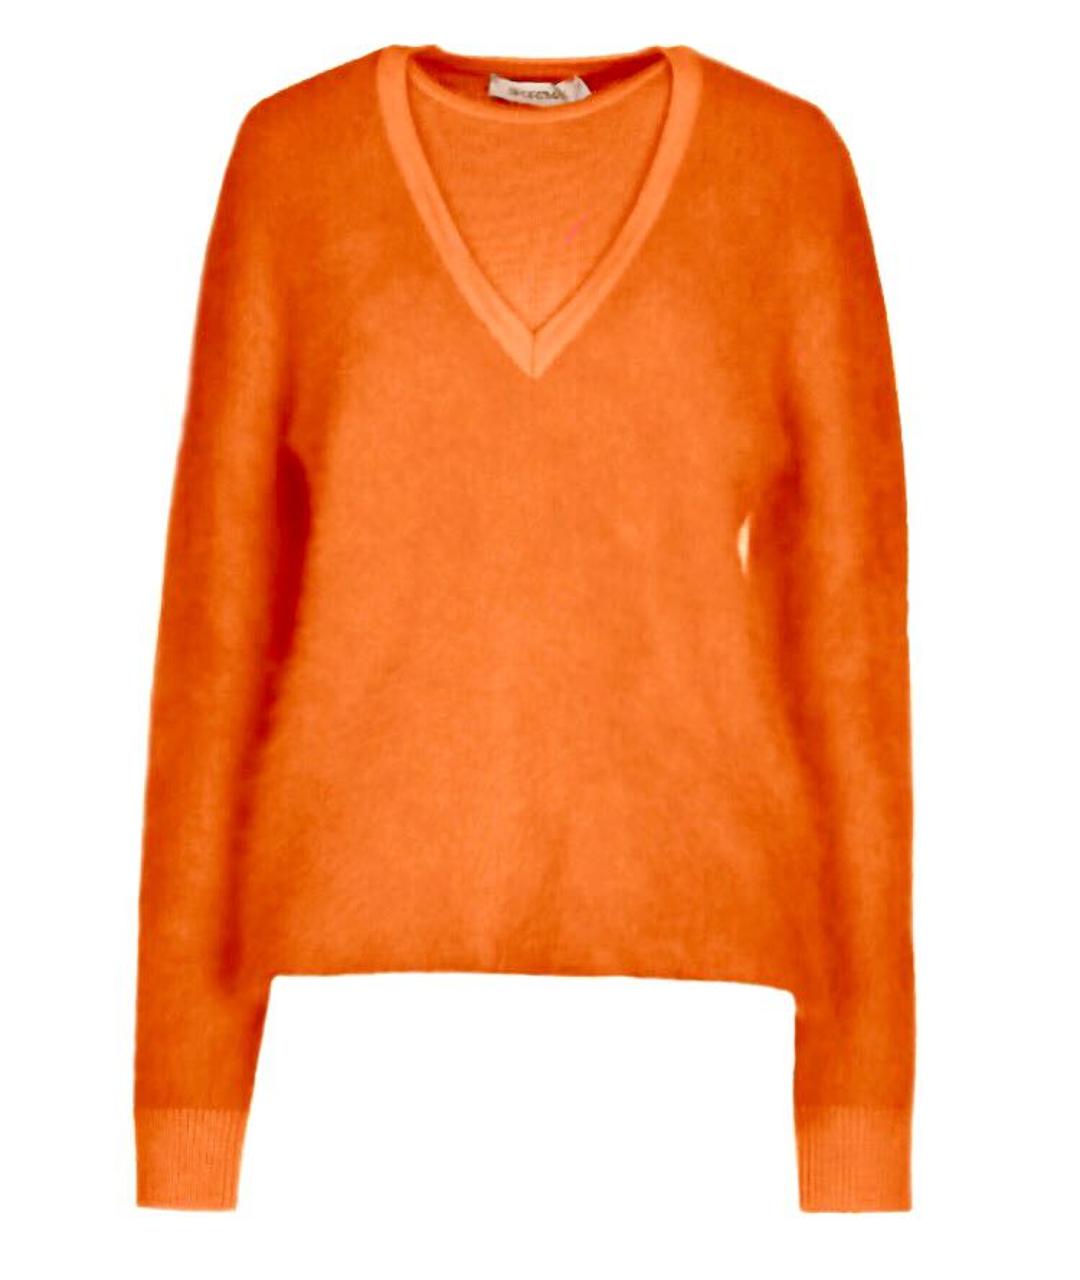 SPORTMAX Оранжевый шерстяной джемпер / свитер, фото 1